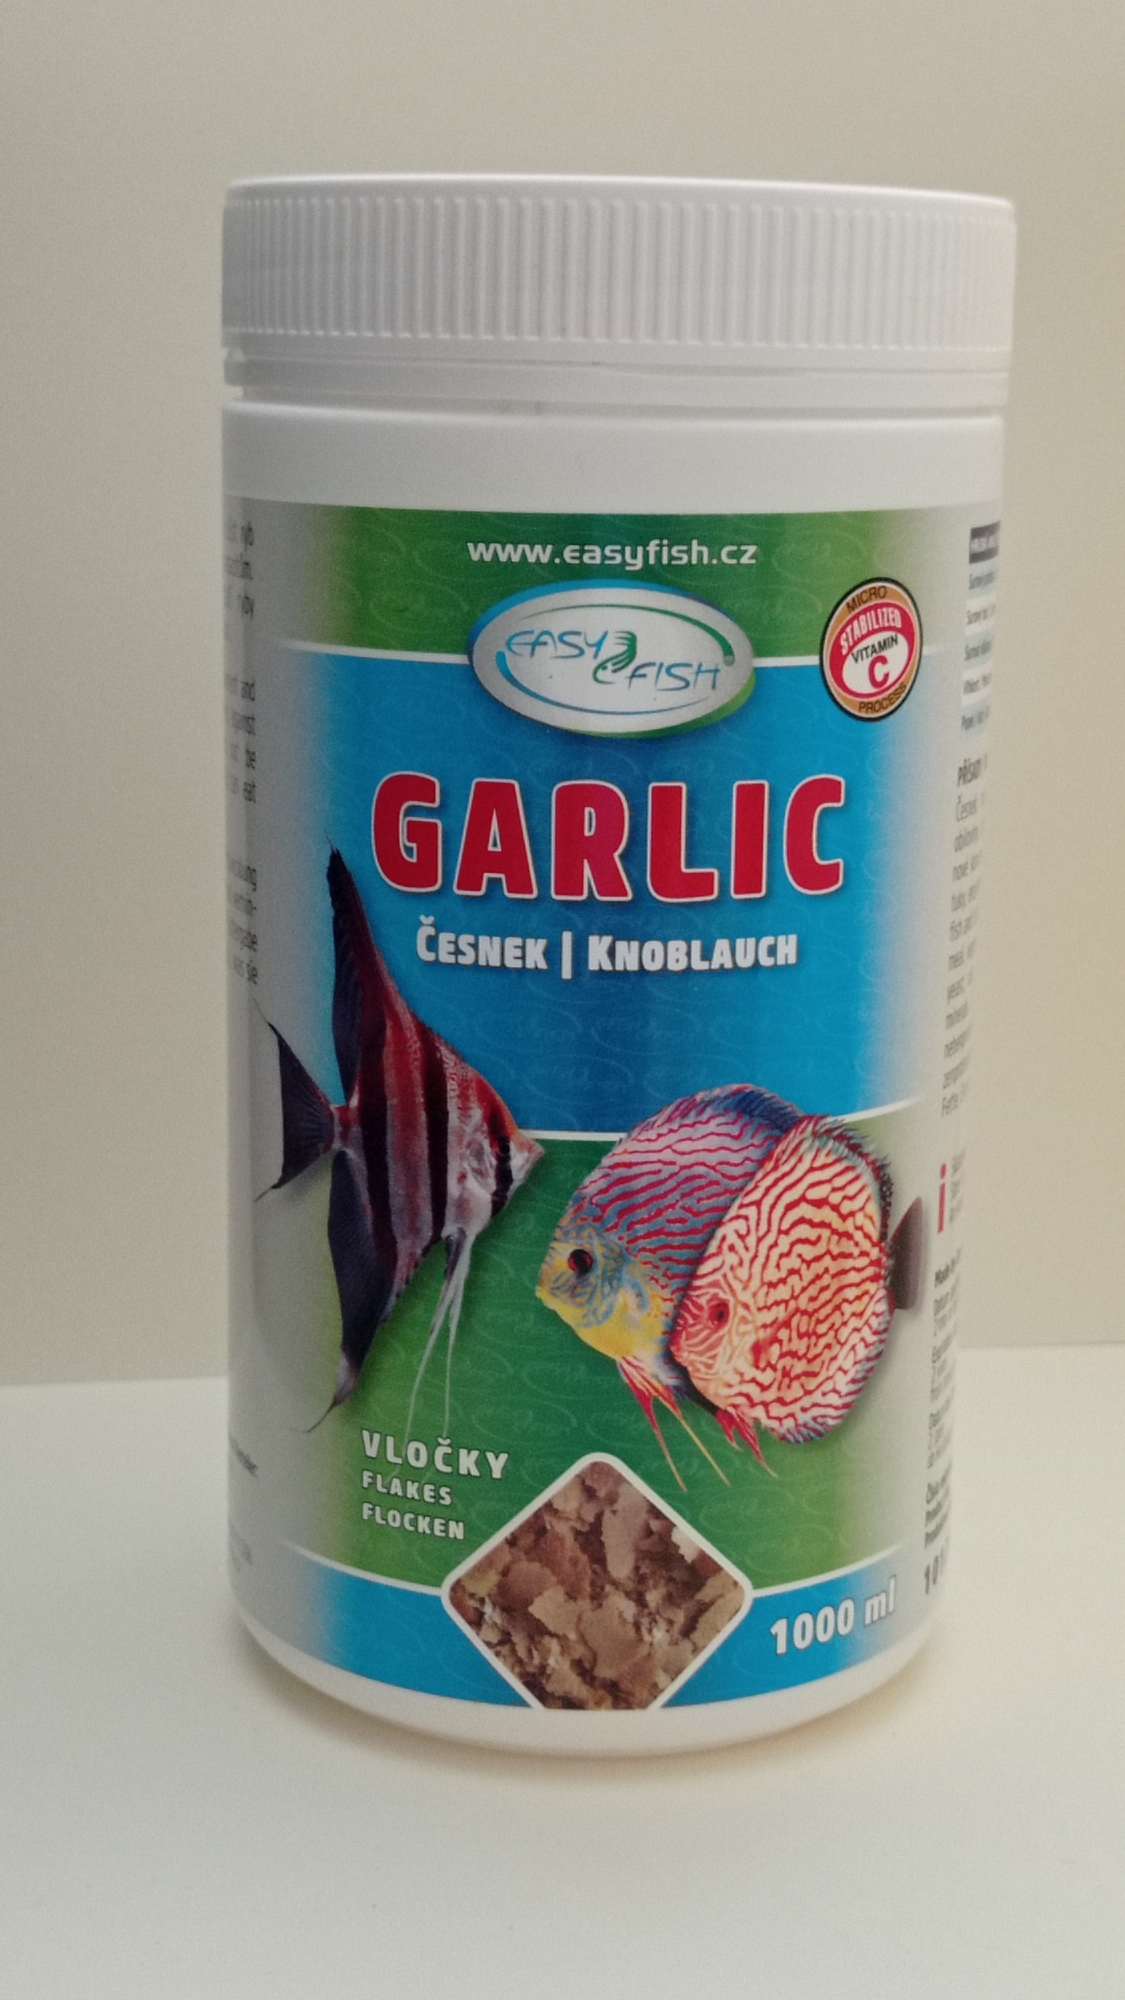 EasyFish Garlic - česnekové vločky 1000 ml